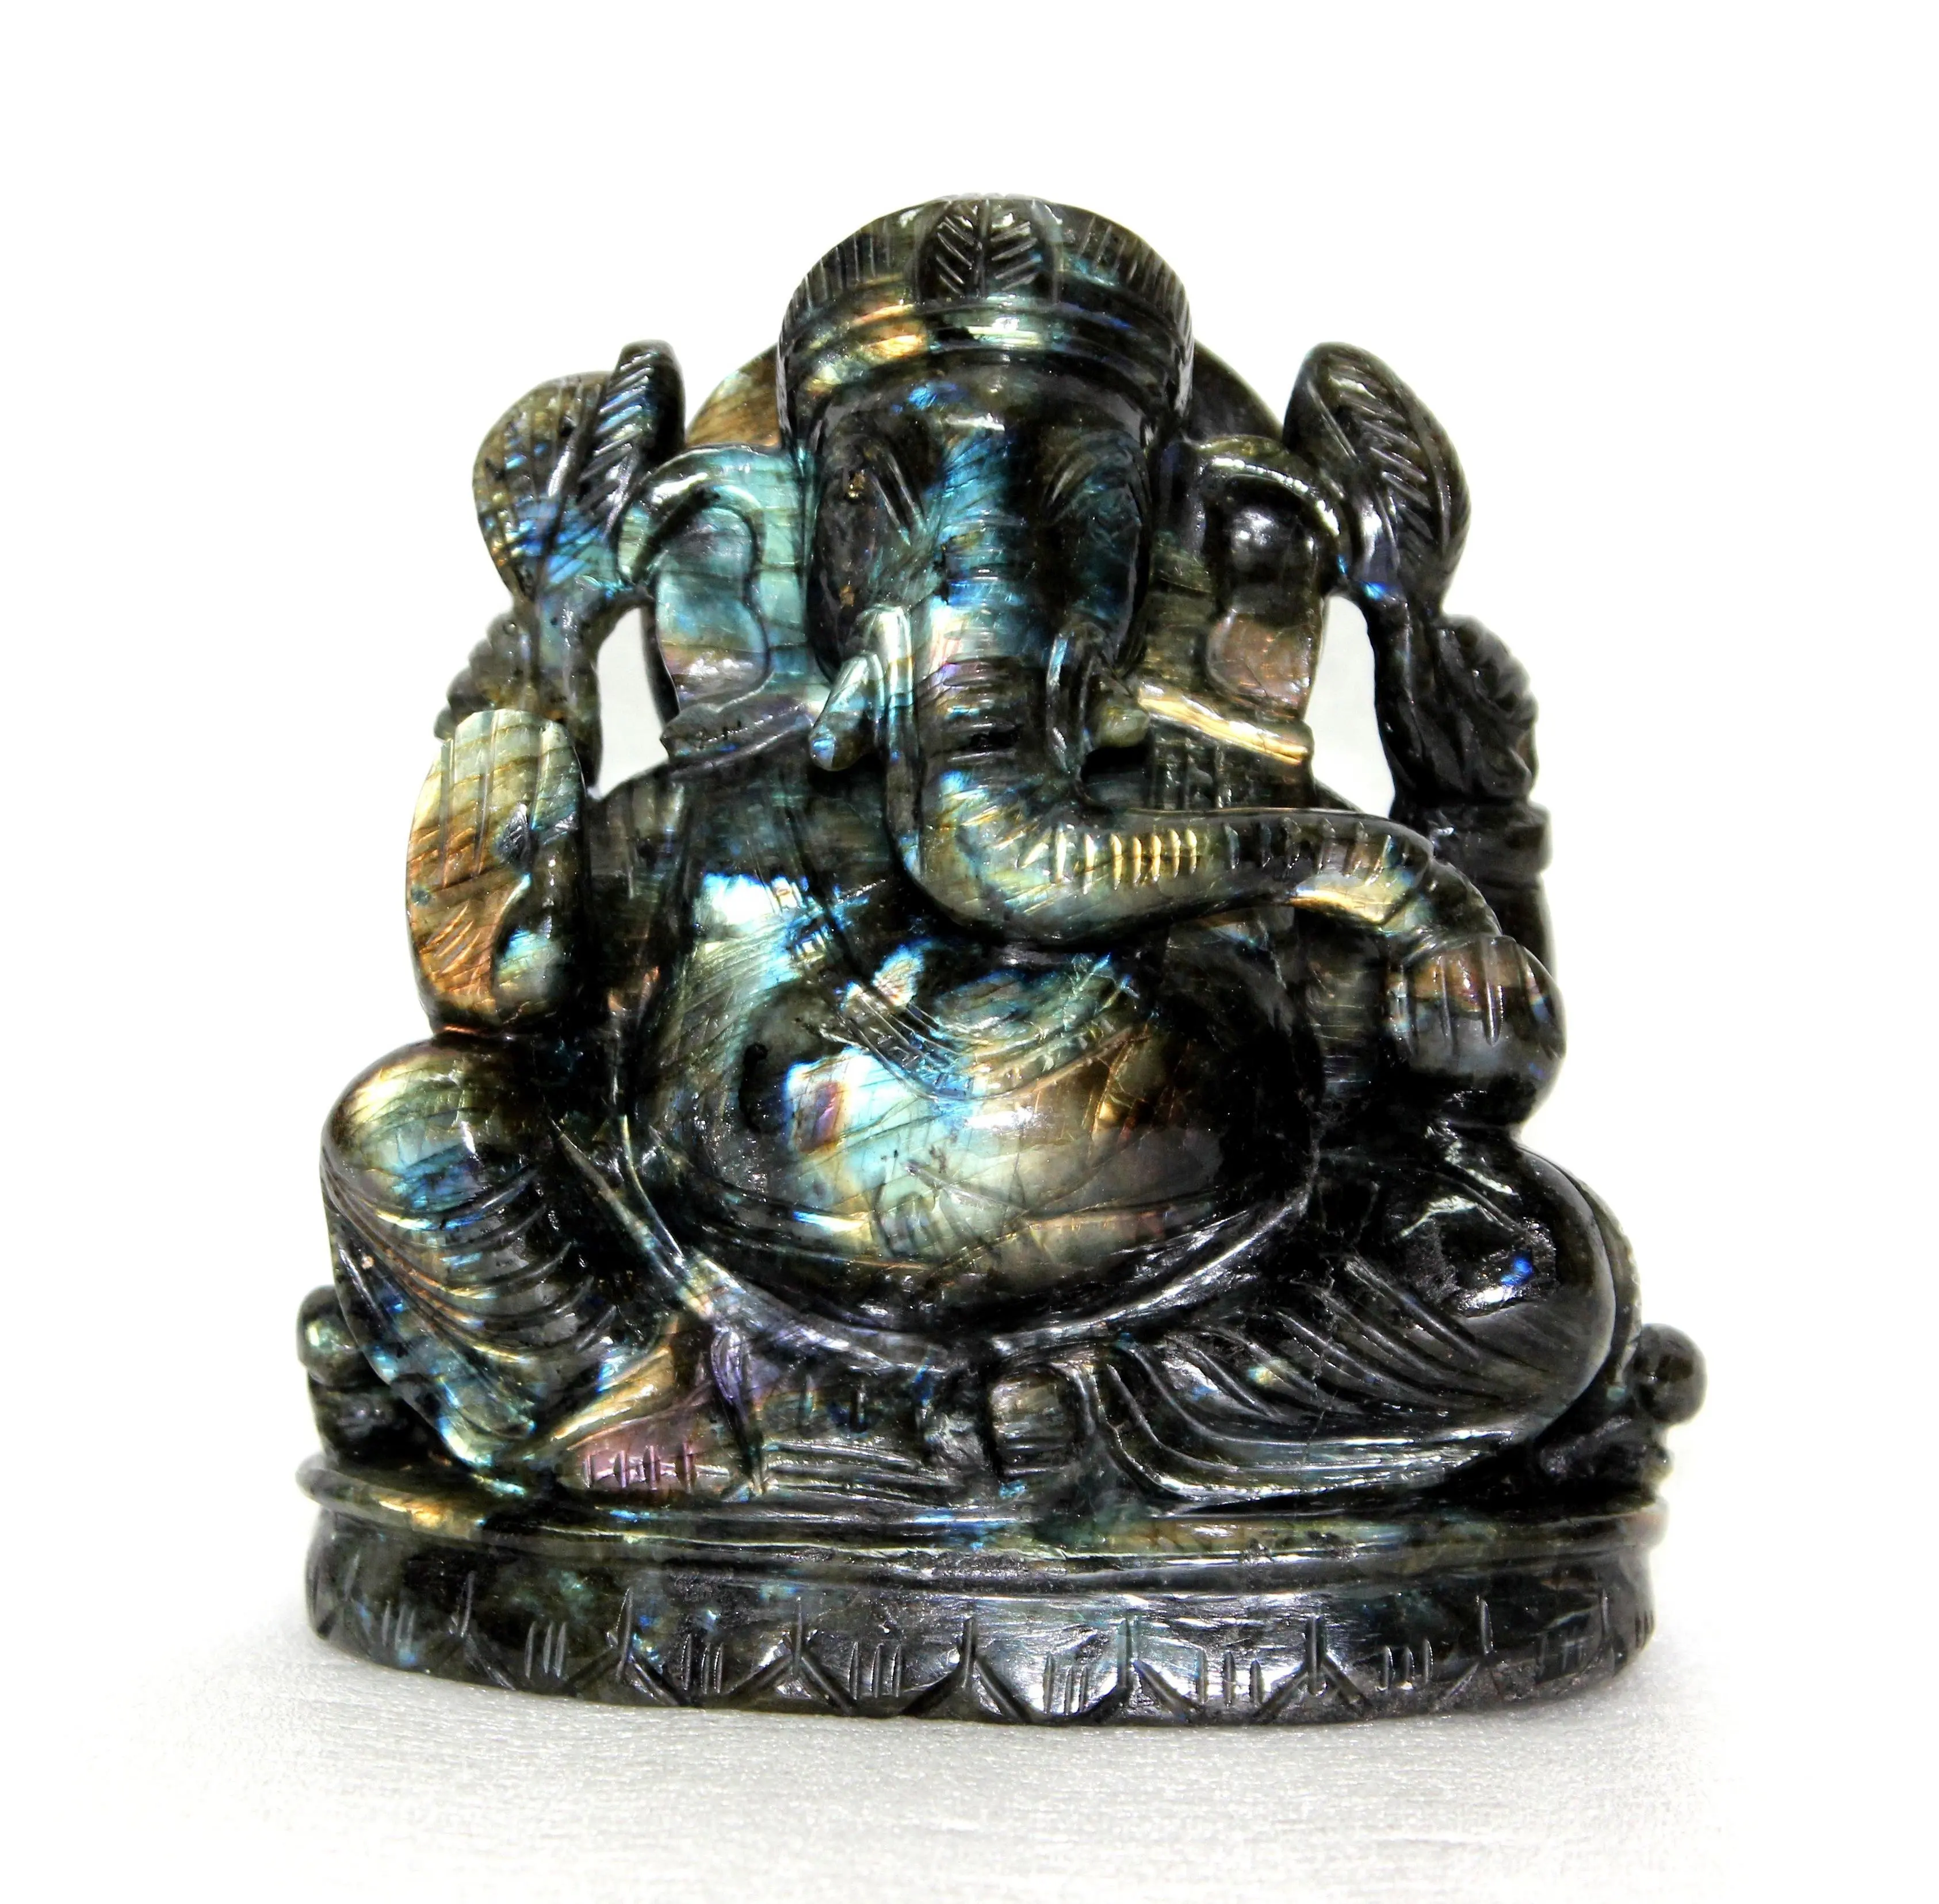 Kaufen Sie hochwertige Edelstein Hinduismus Spirituelle hand geschnitzte natürliche Labradorit Skulptur Ganesha Carving Statue